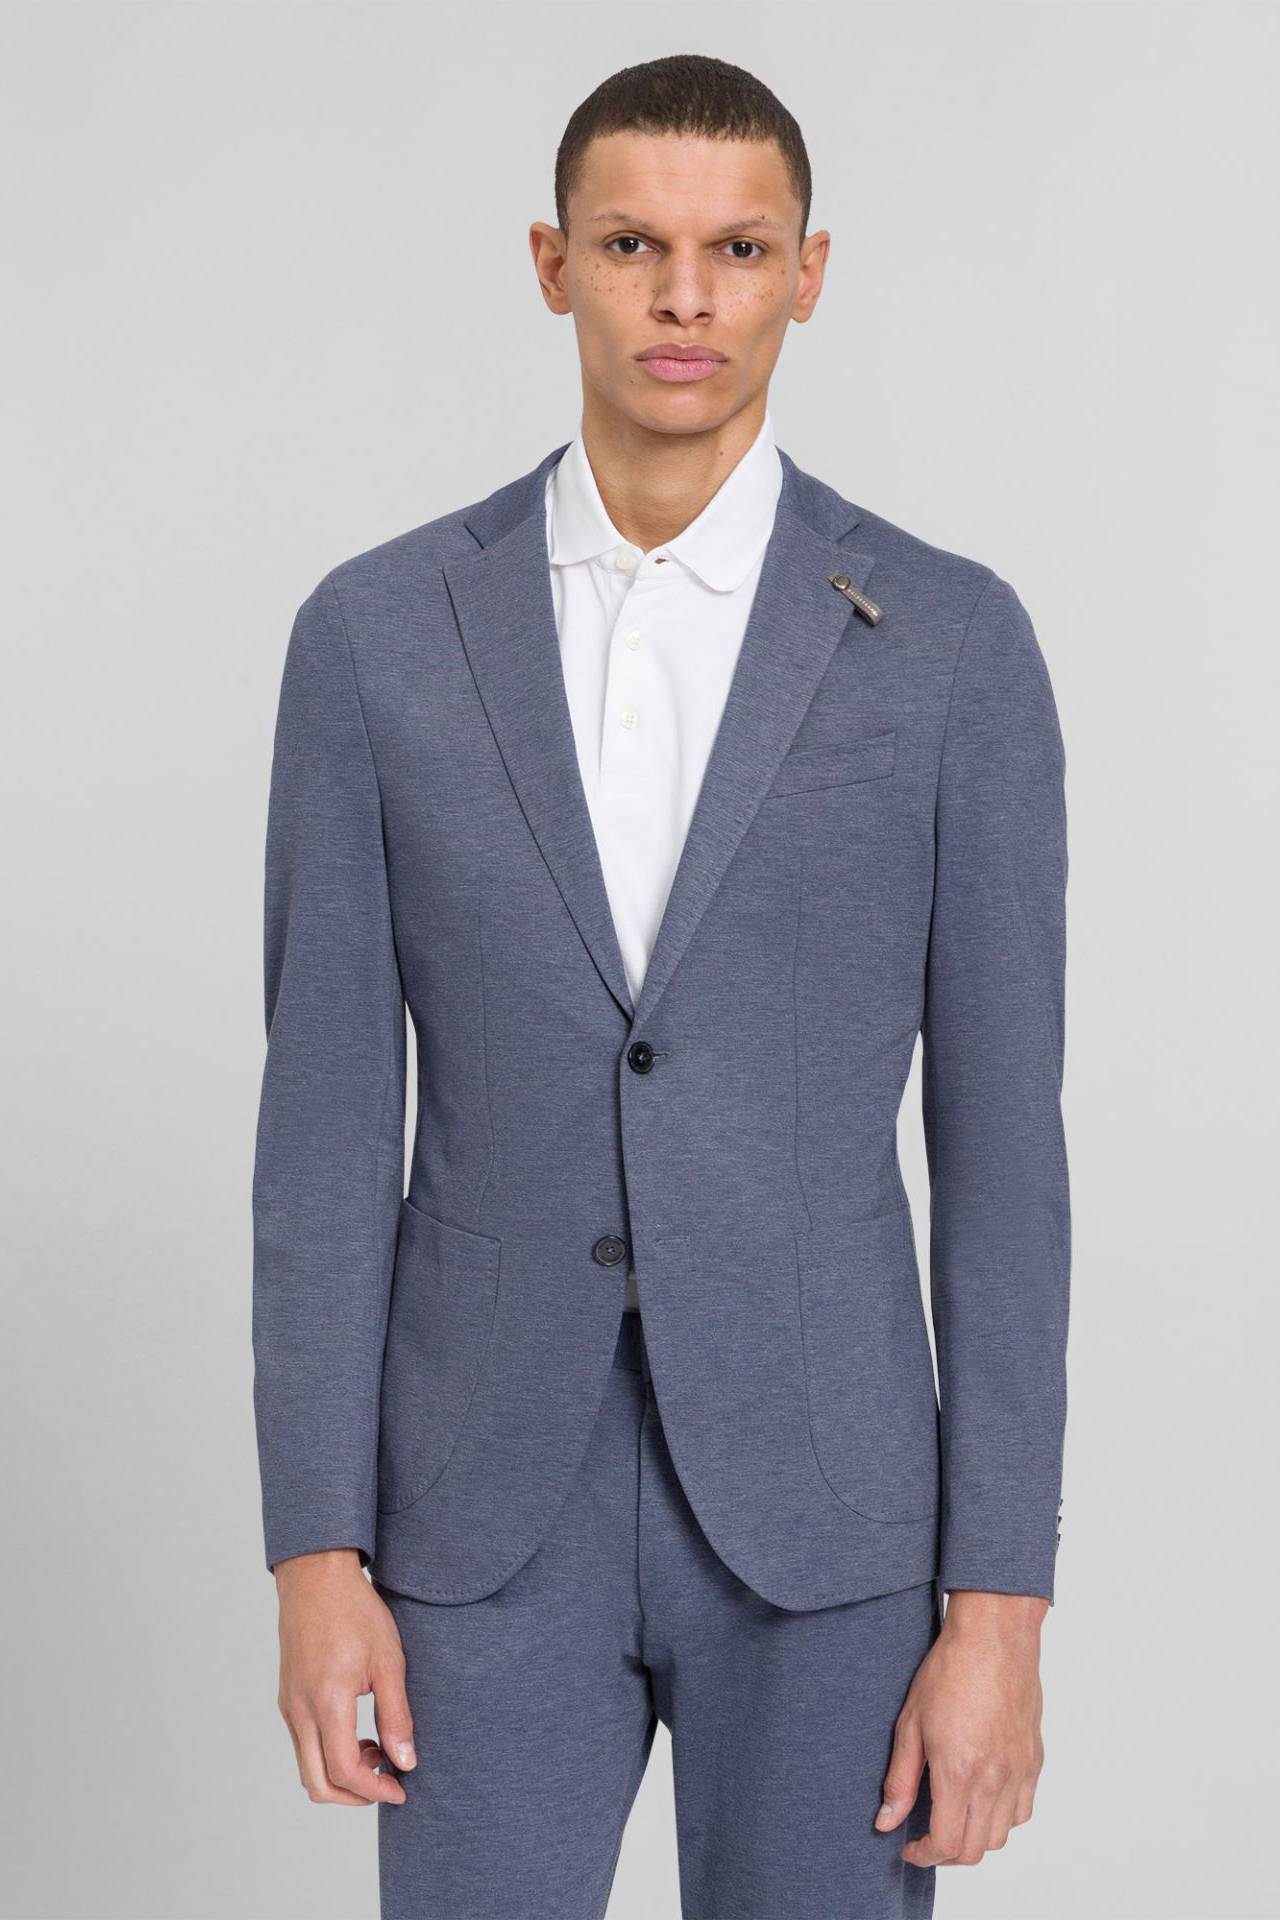 Store Seba & | Men | Online Jersey | Blazer Stretch mientus Anzüge BALDESSARINI | Blazer | Blazer Kleidung